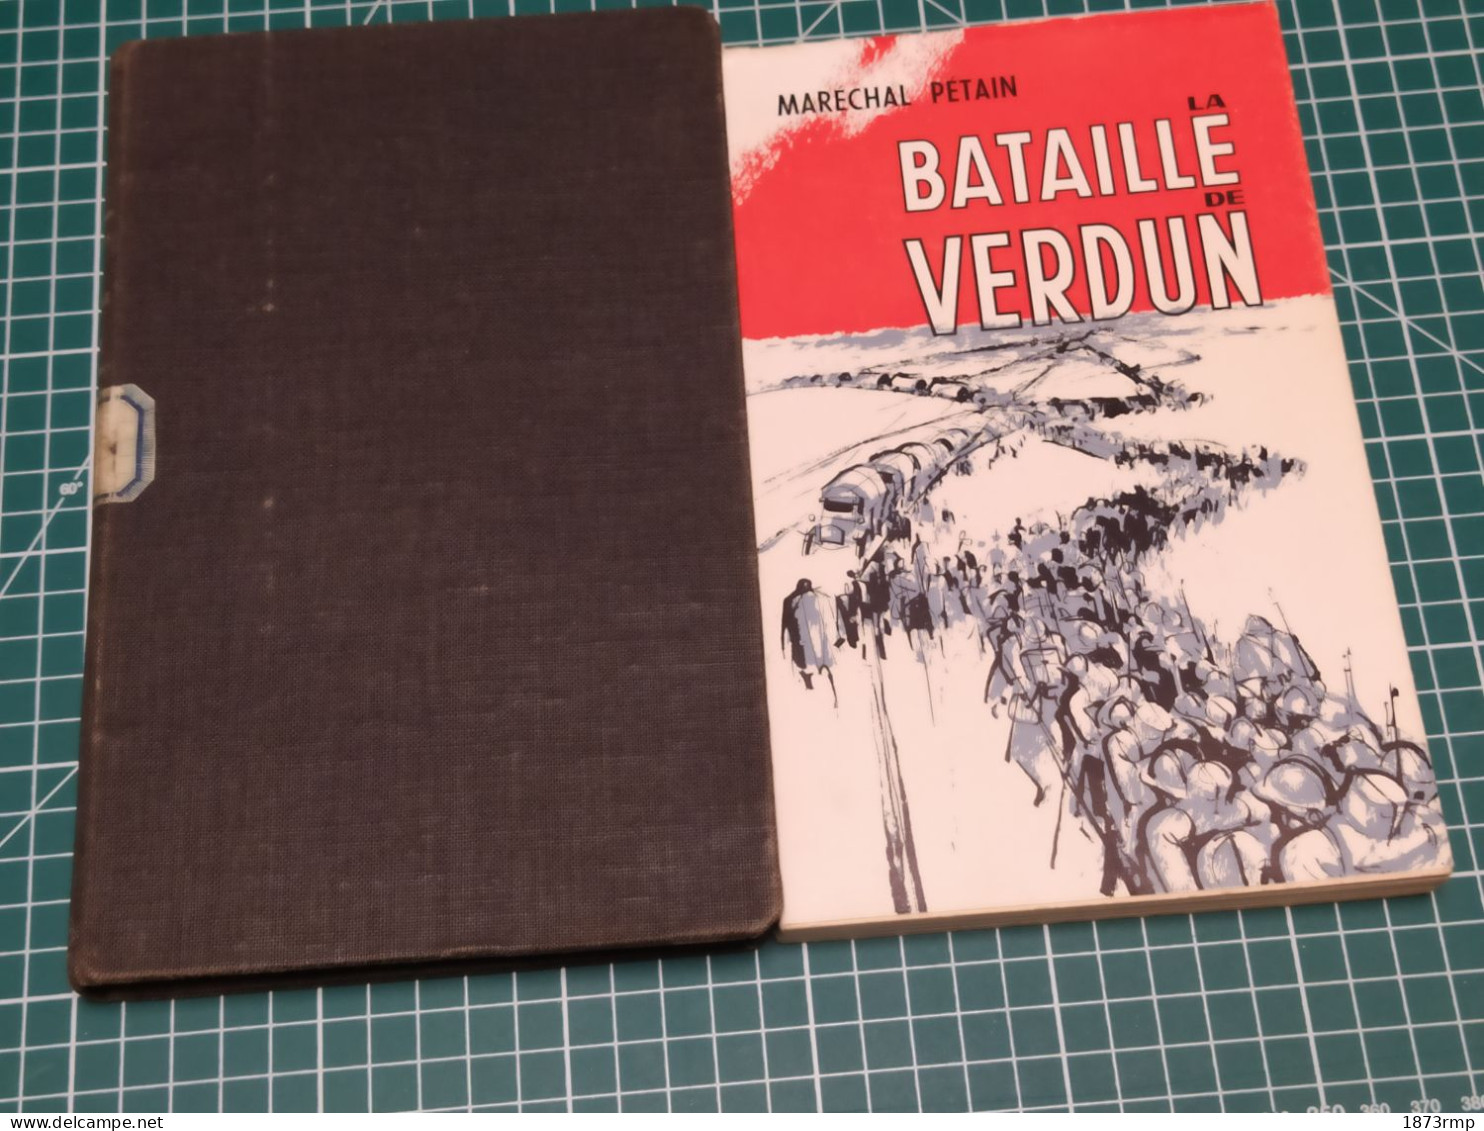 2 EDITIONS DE LA BATAILLE DE VERDUN DU MARÉCHAL PETAIN - French